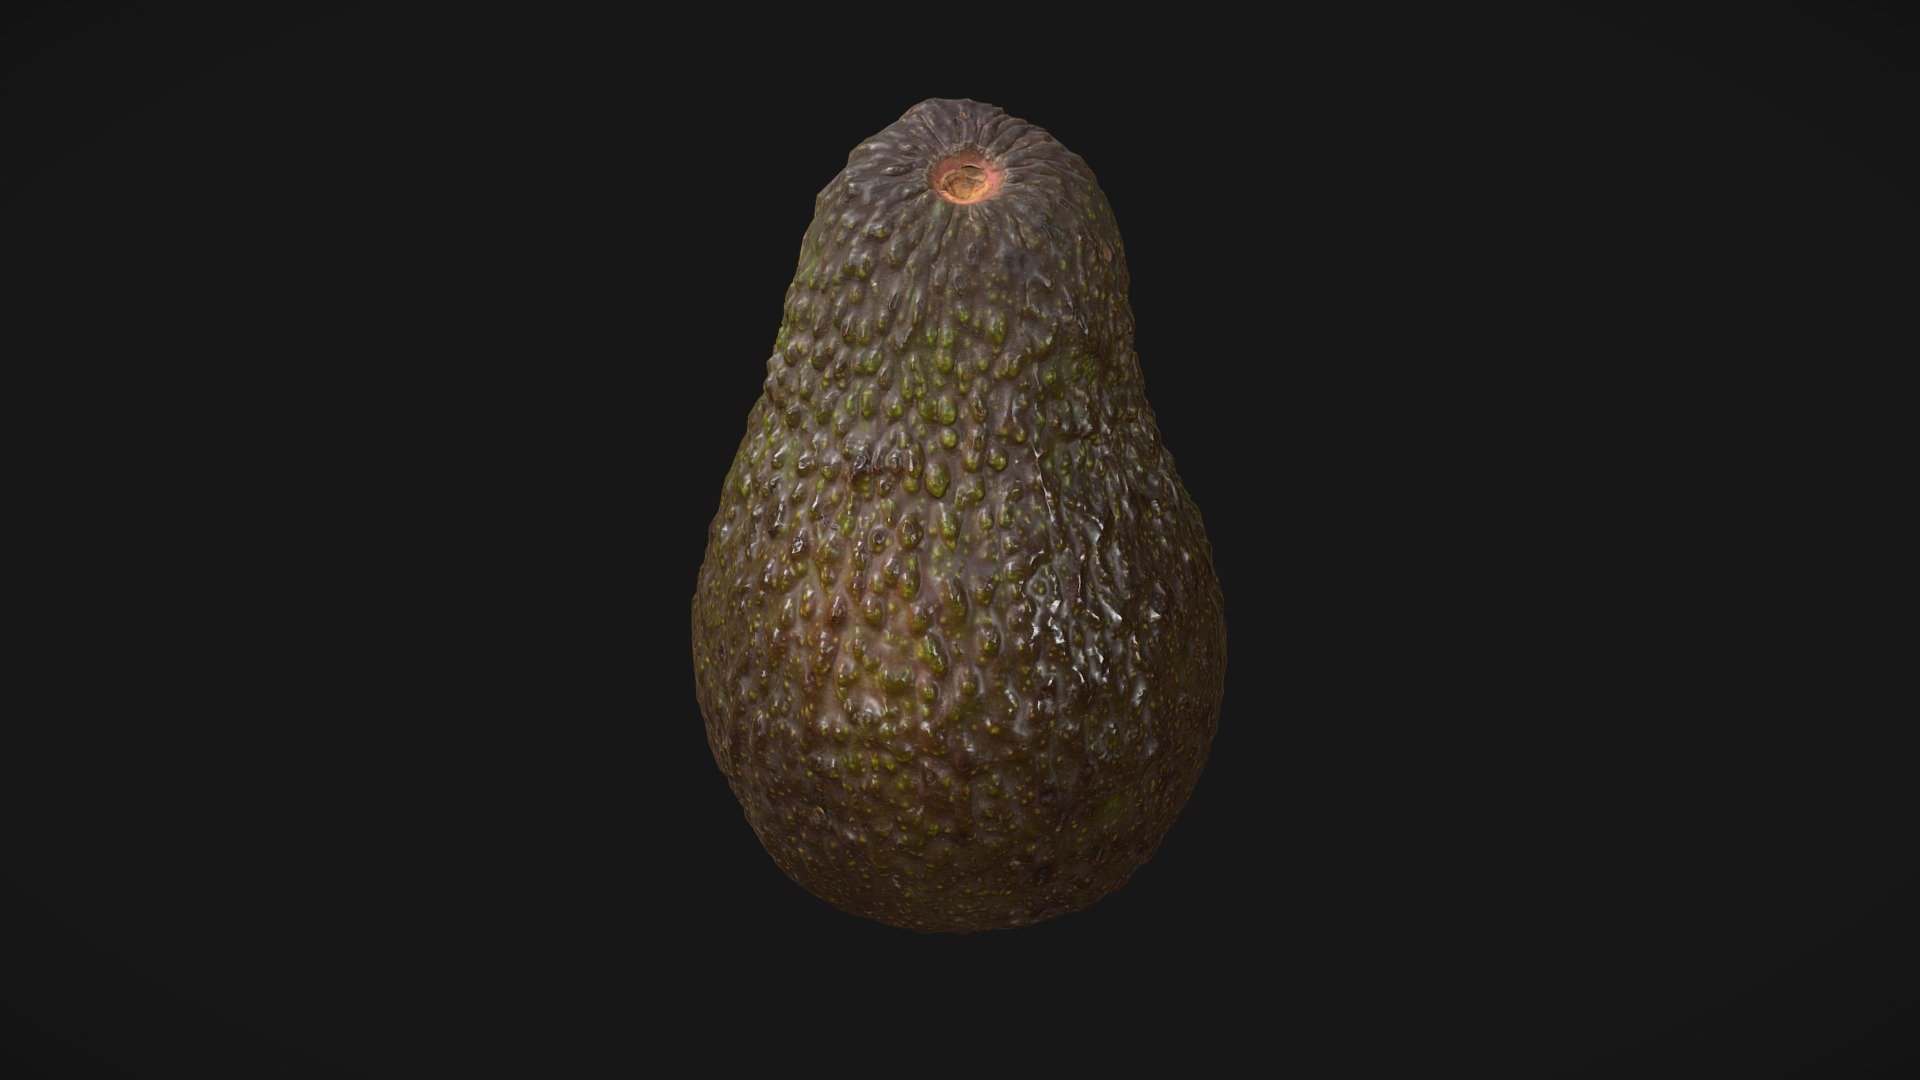 3D scan of an avocado 3d model